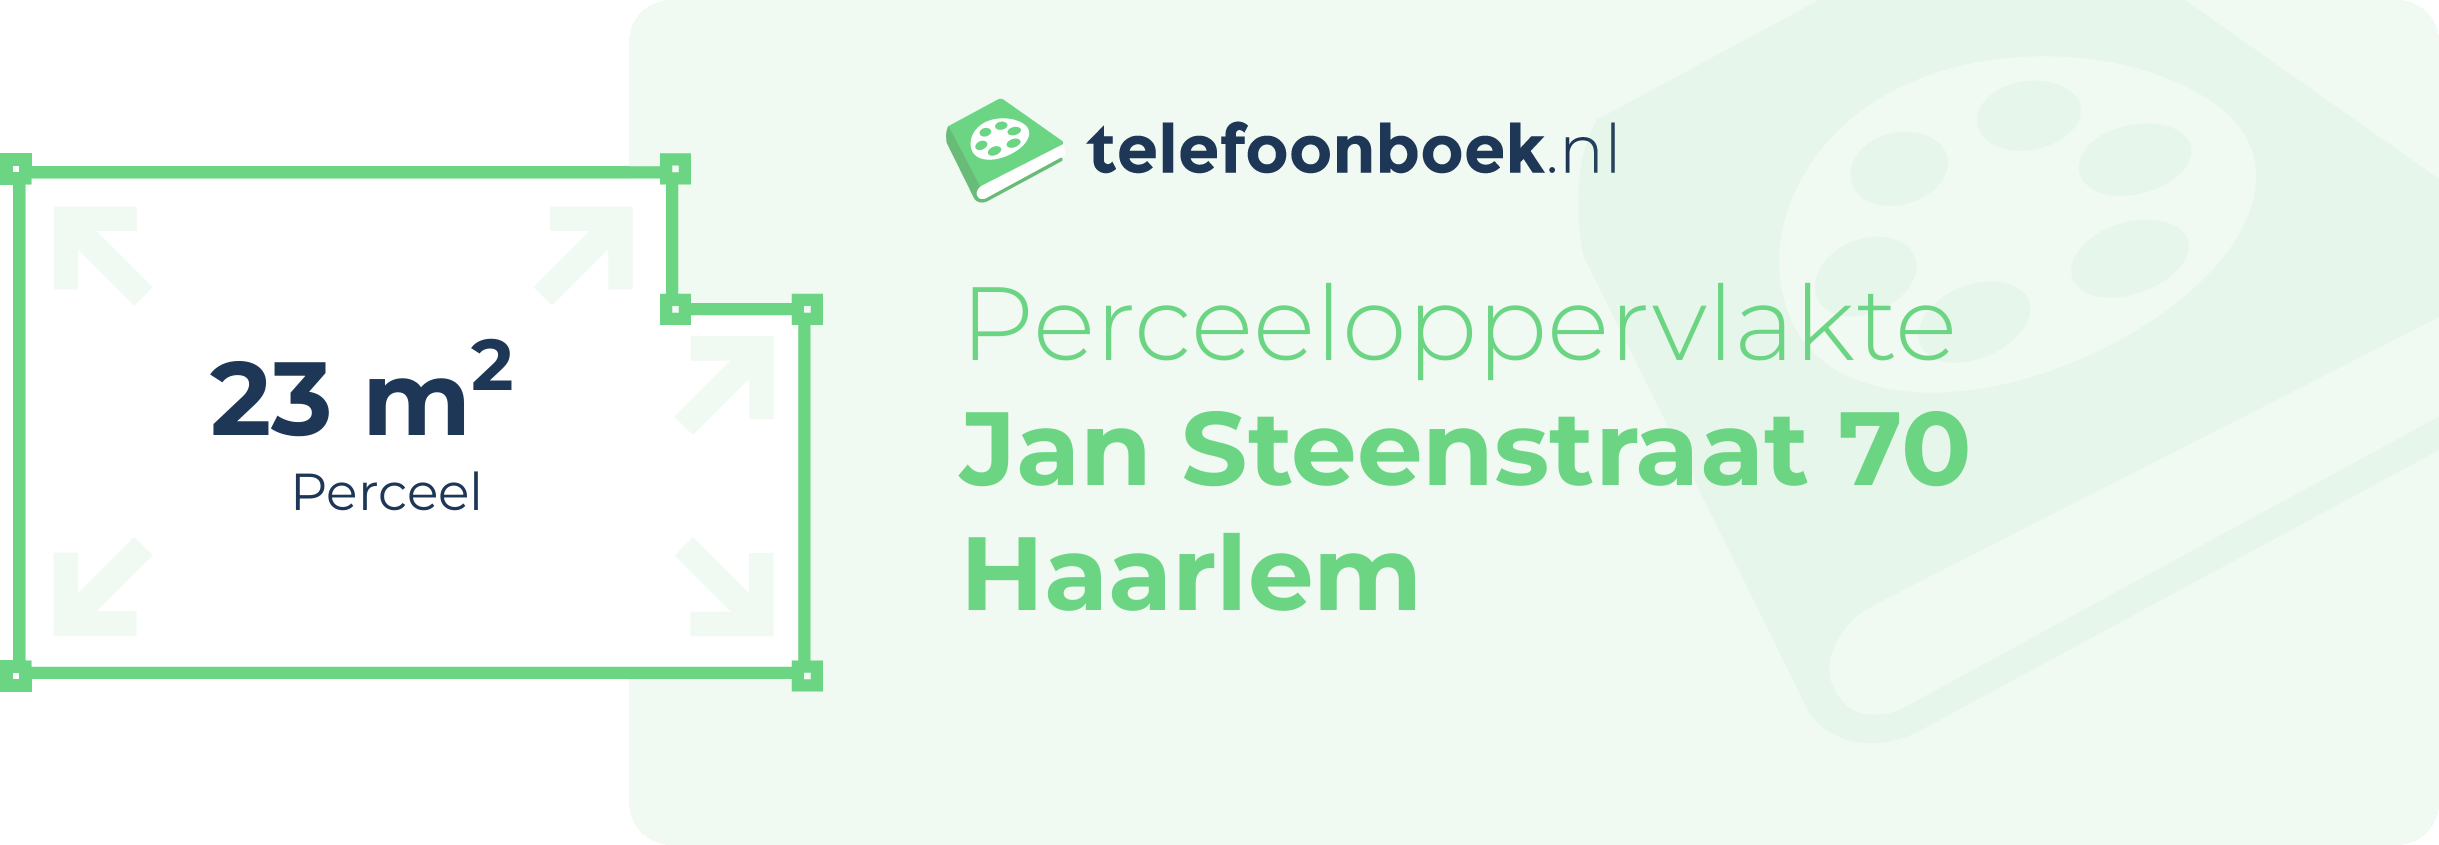 Perceeloppervlakte Jan Steenstraat 70 Haarlem